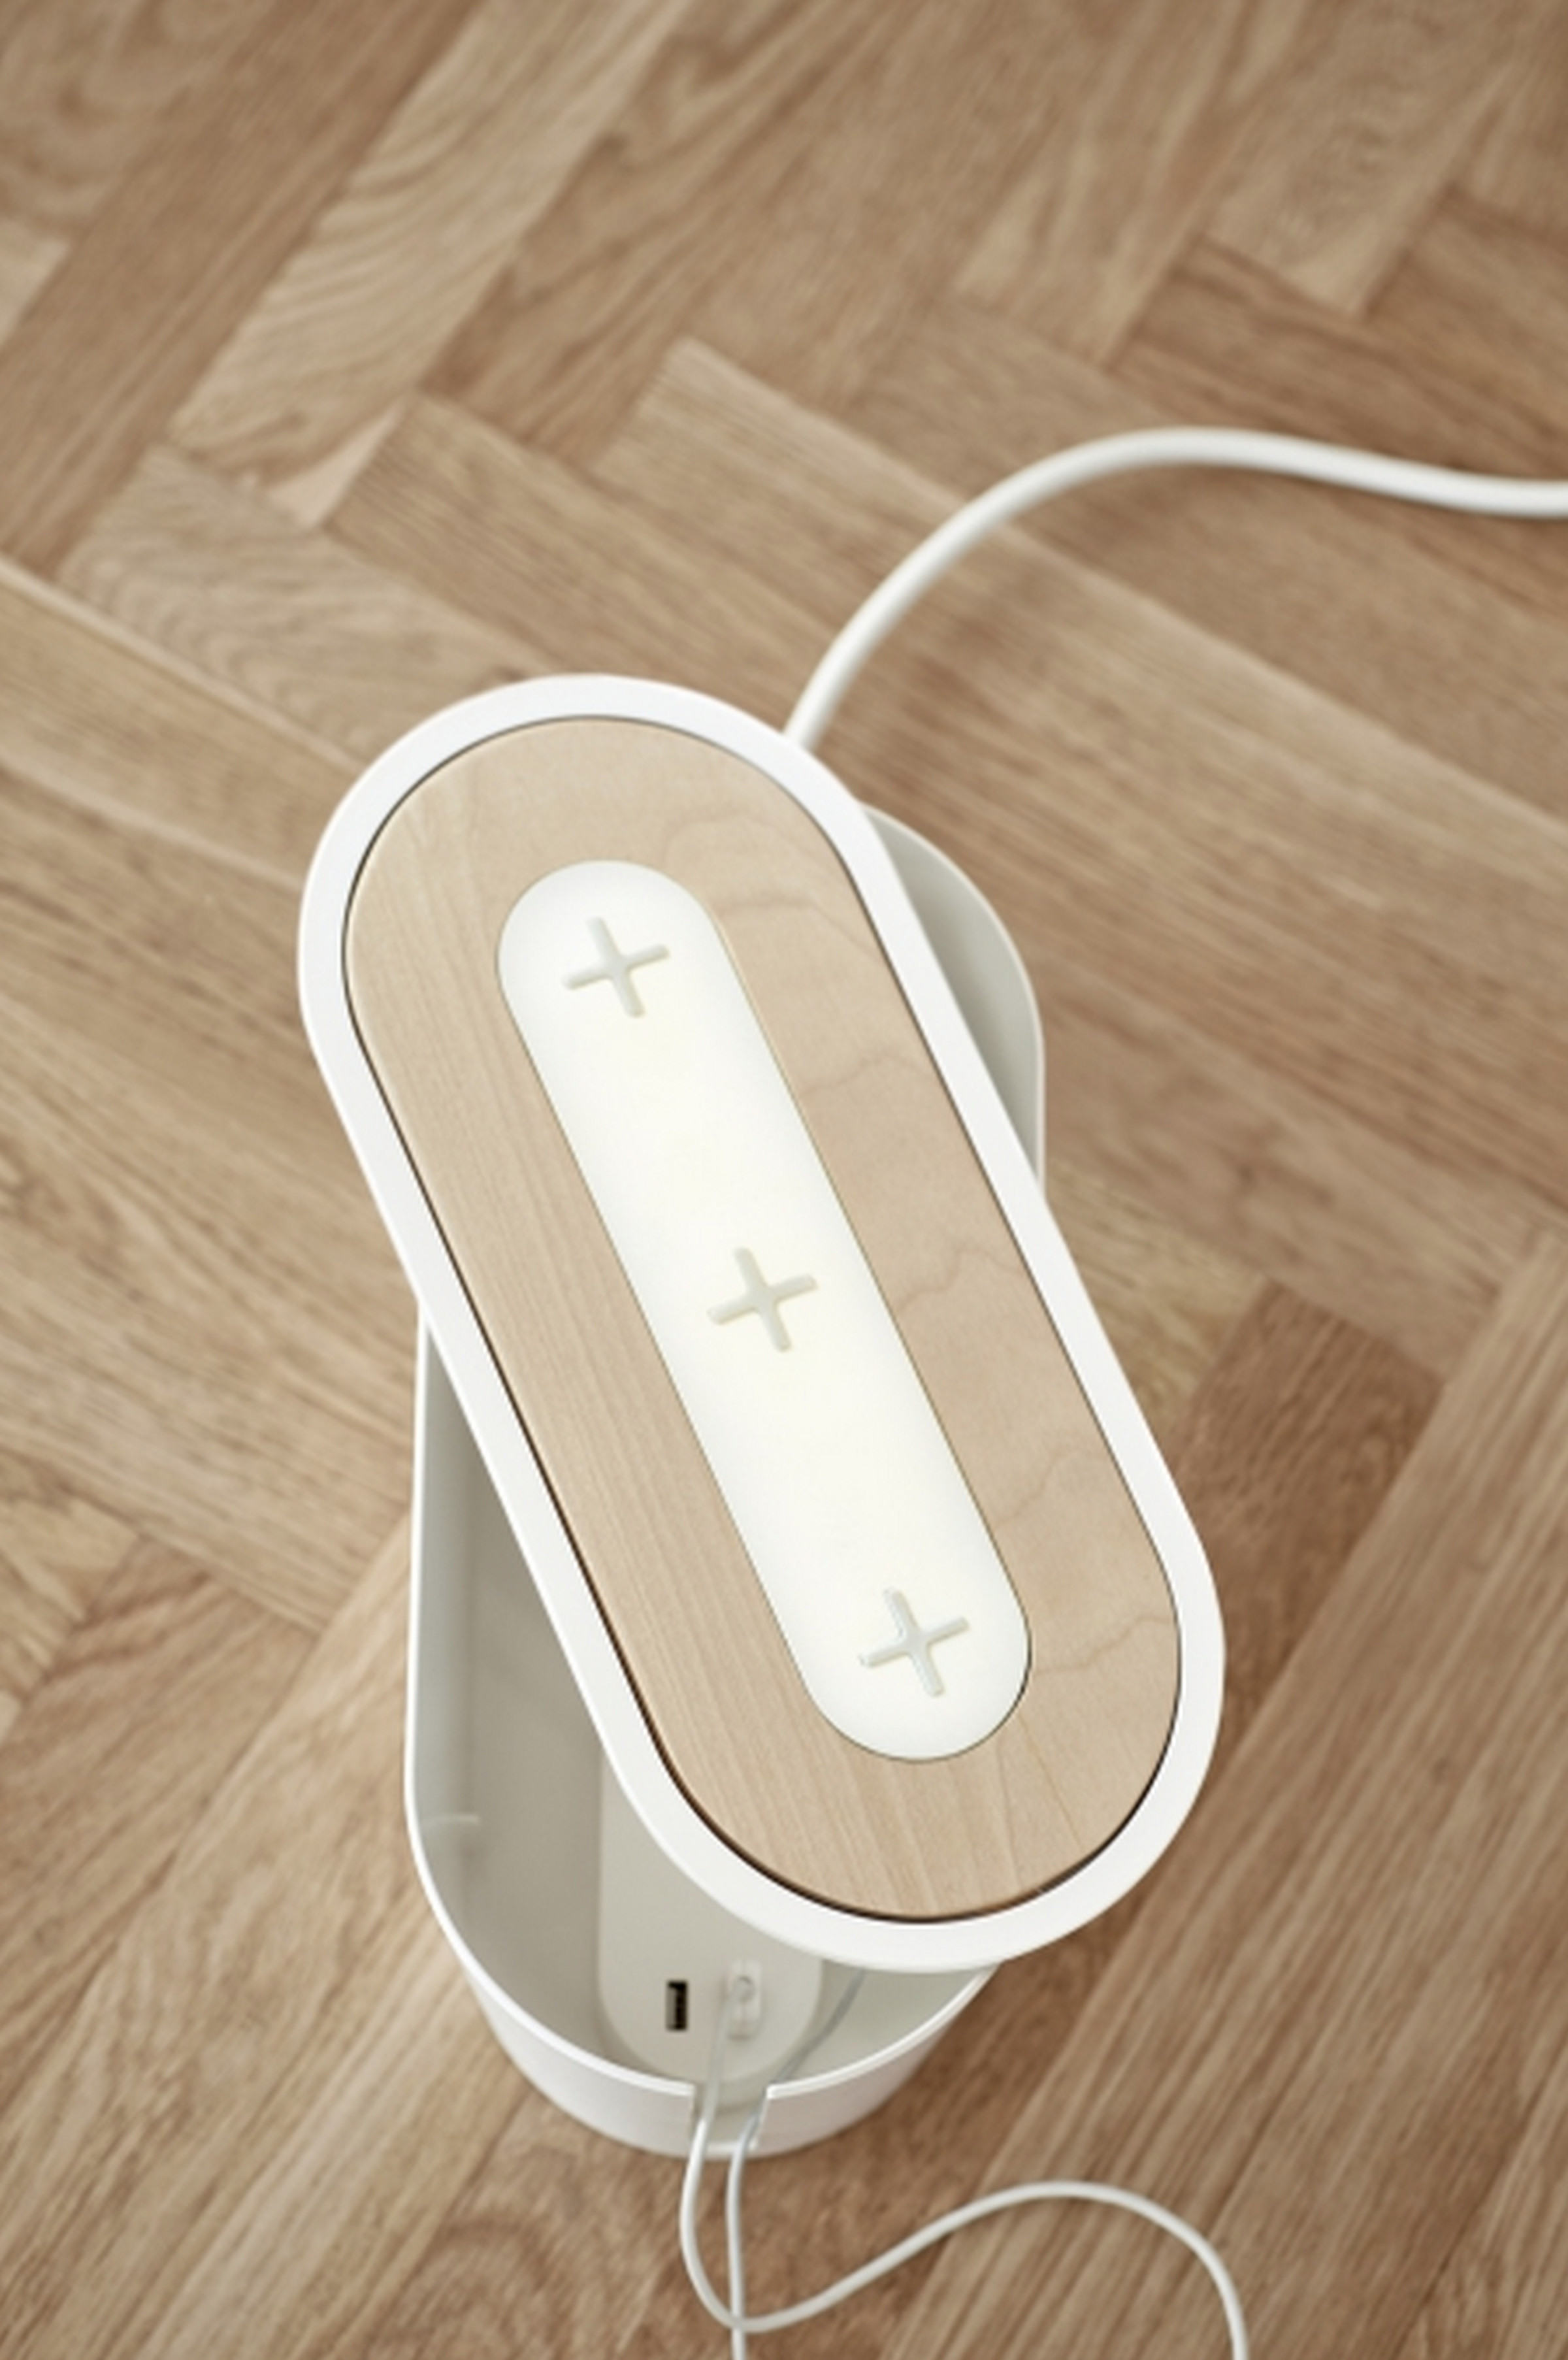 Ikea Qi wireless charging furniture